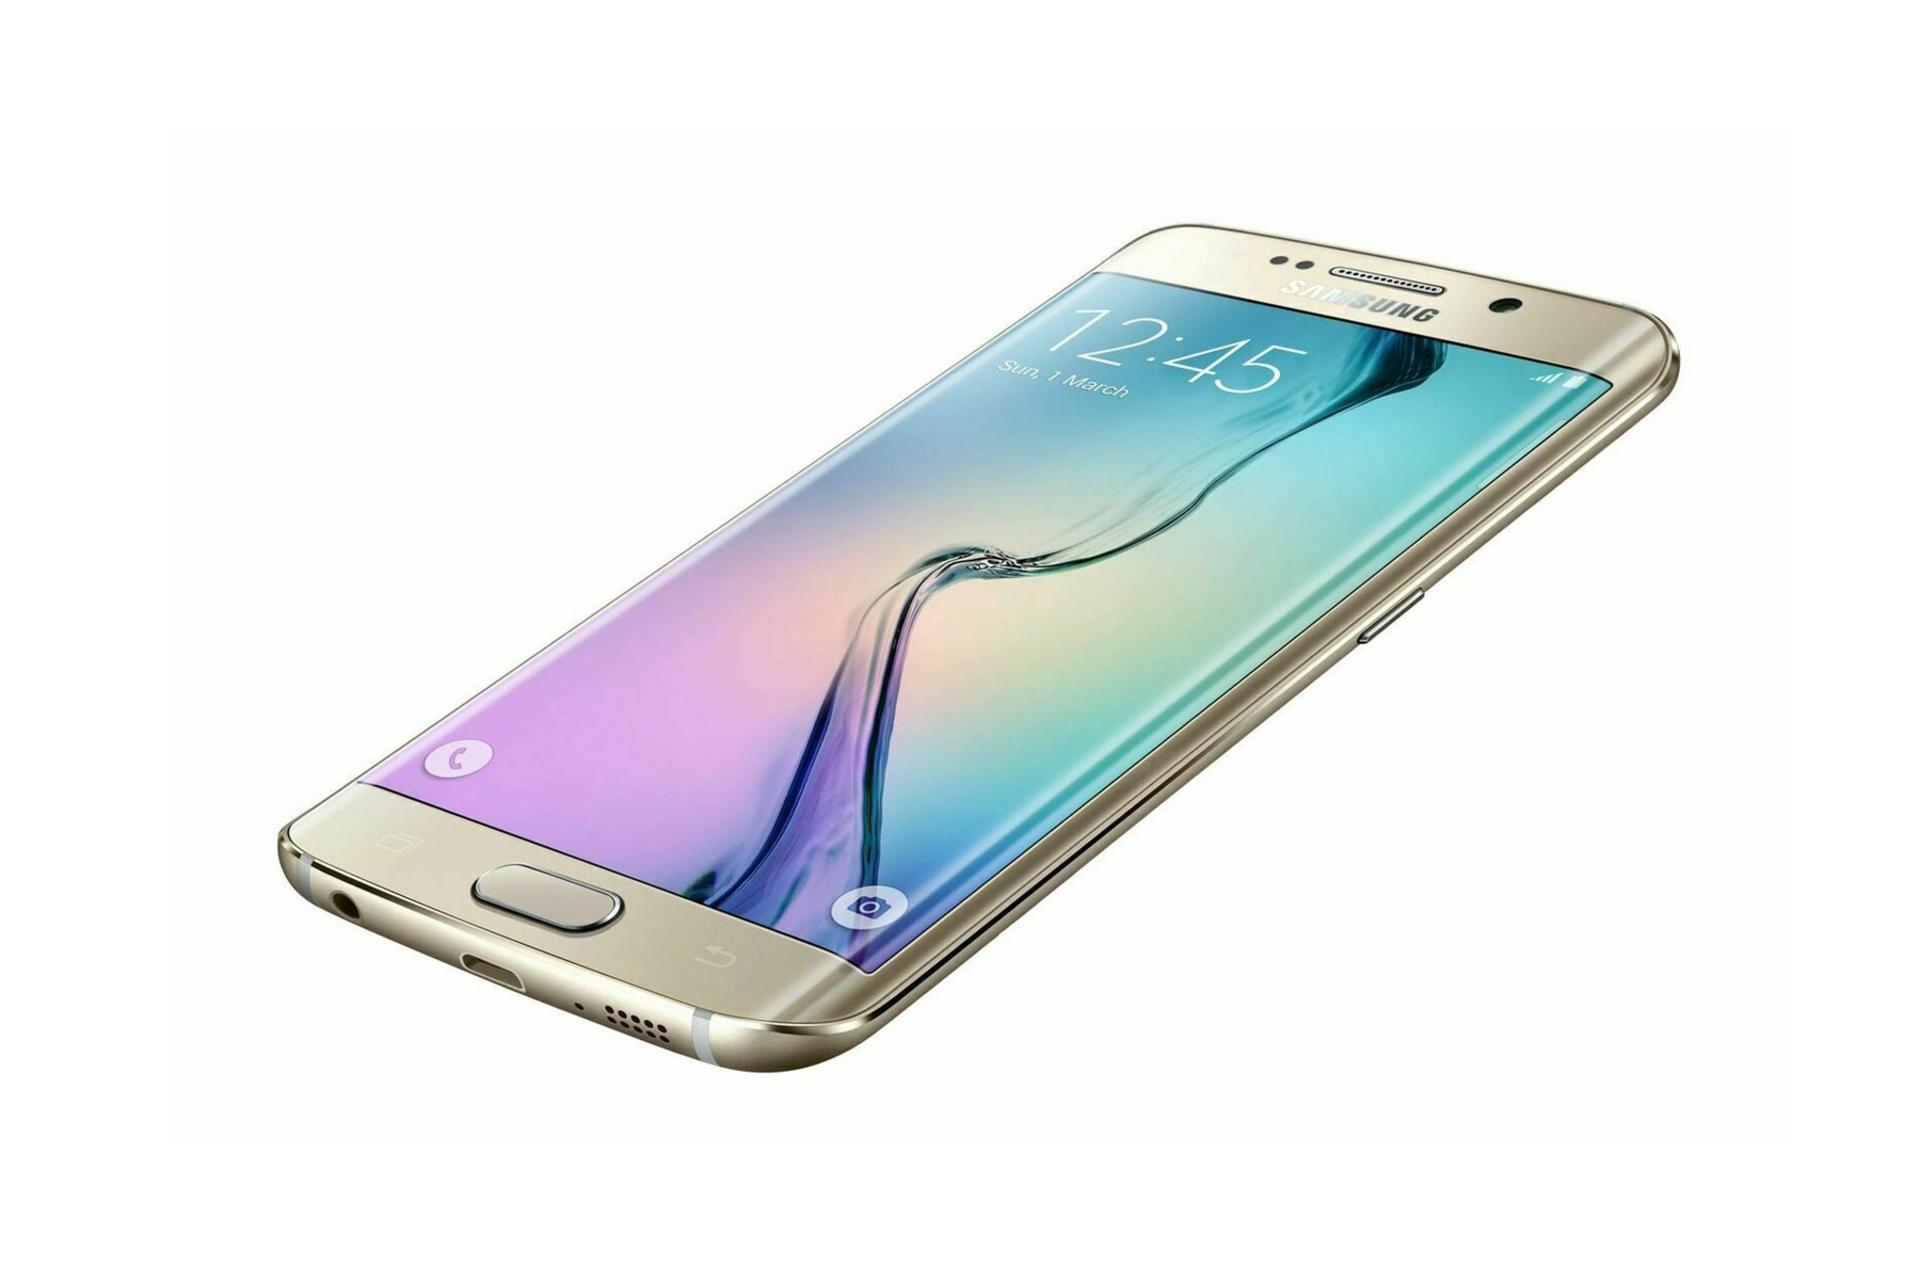 نمایشگر گلکسی اس 6 اج پلاس سامسونگ نسخه آمریکا Samsung Galaxy S6 edge+ USA